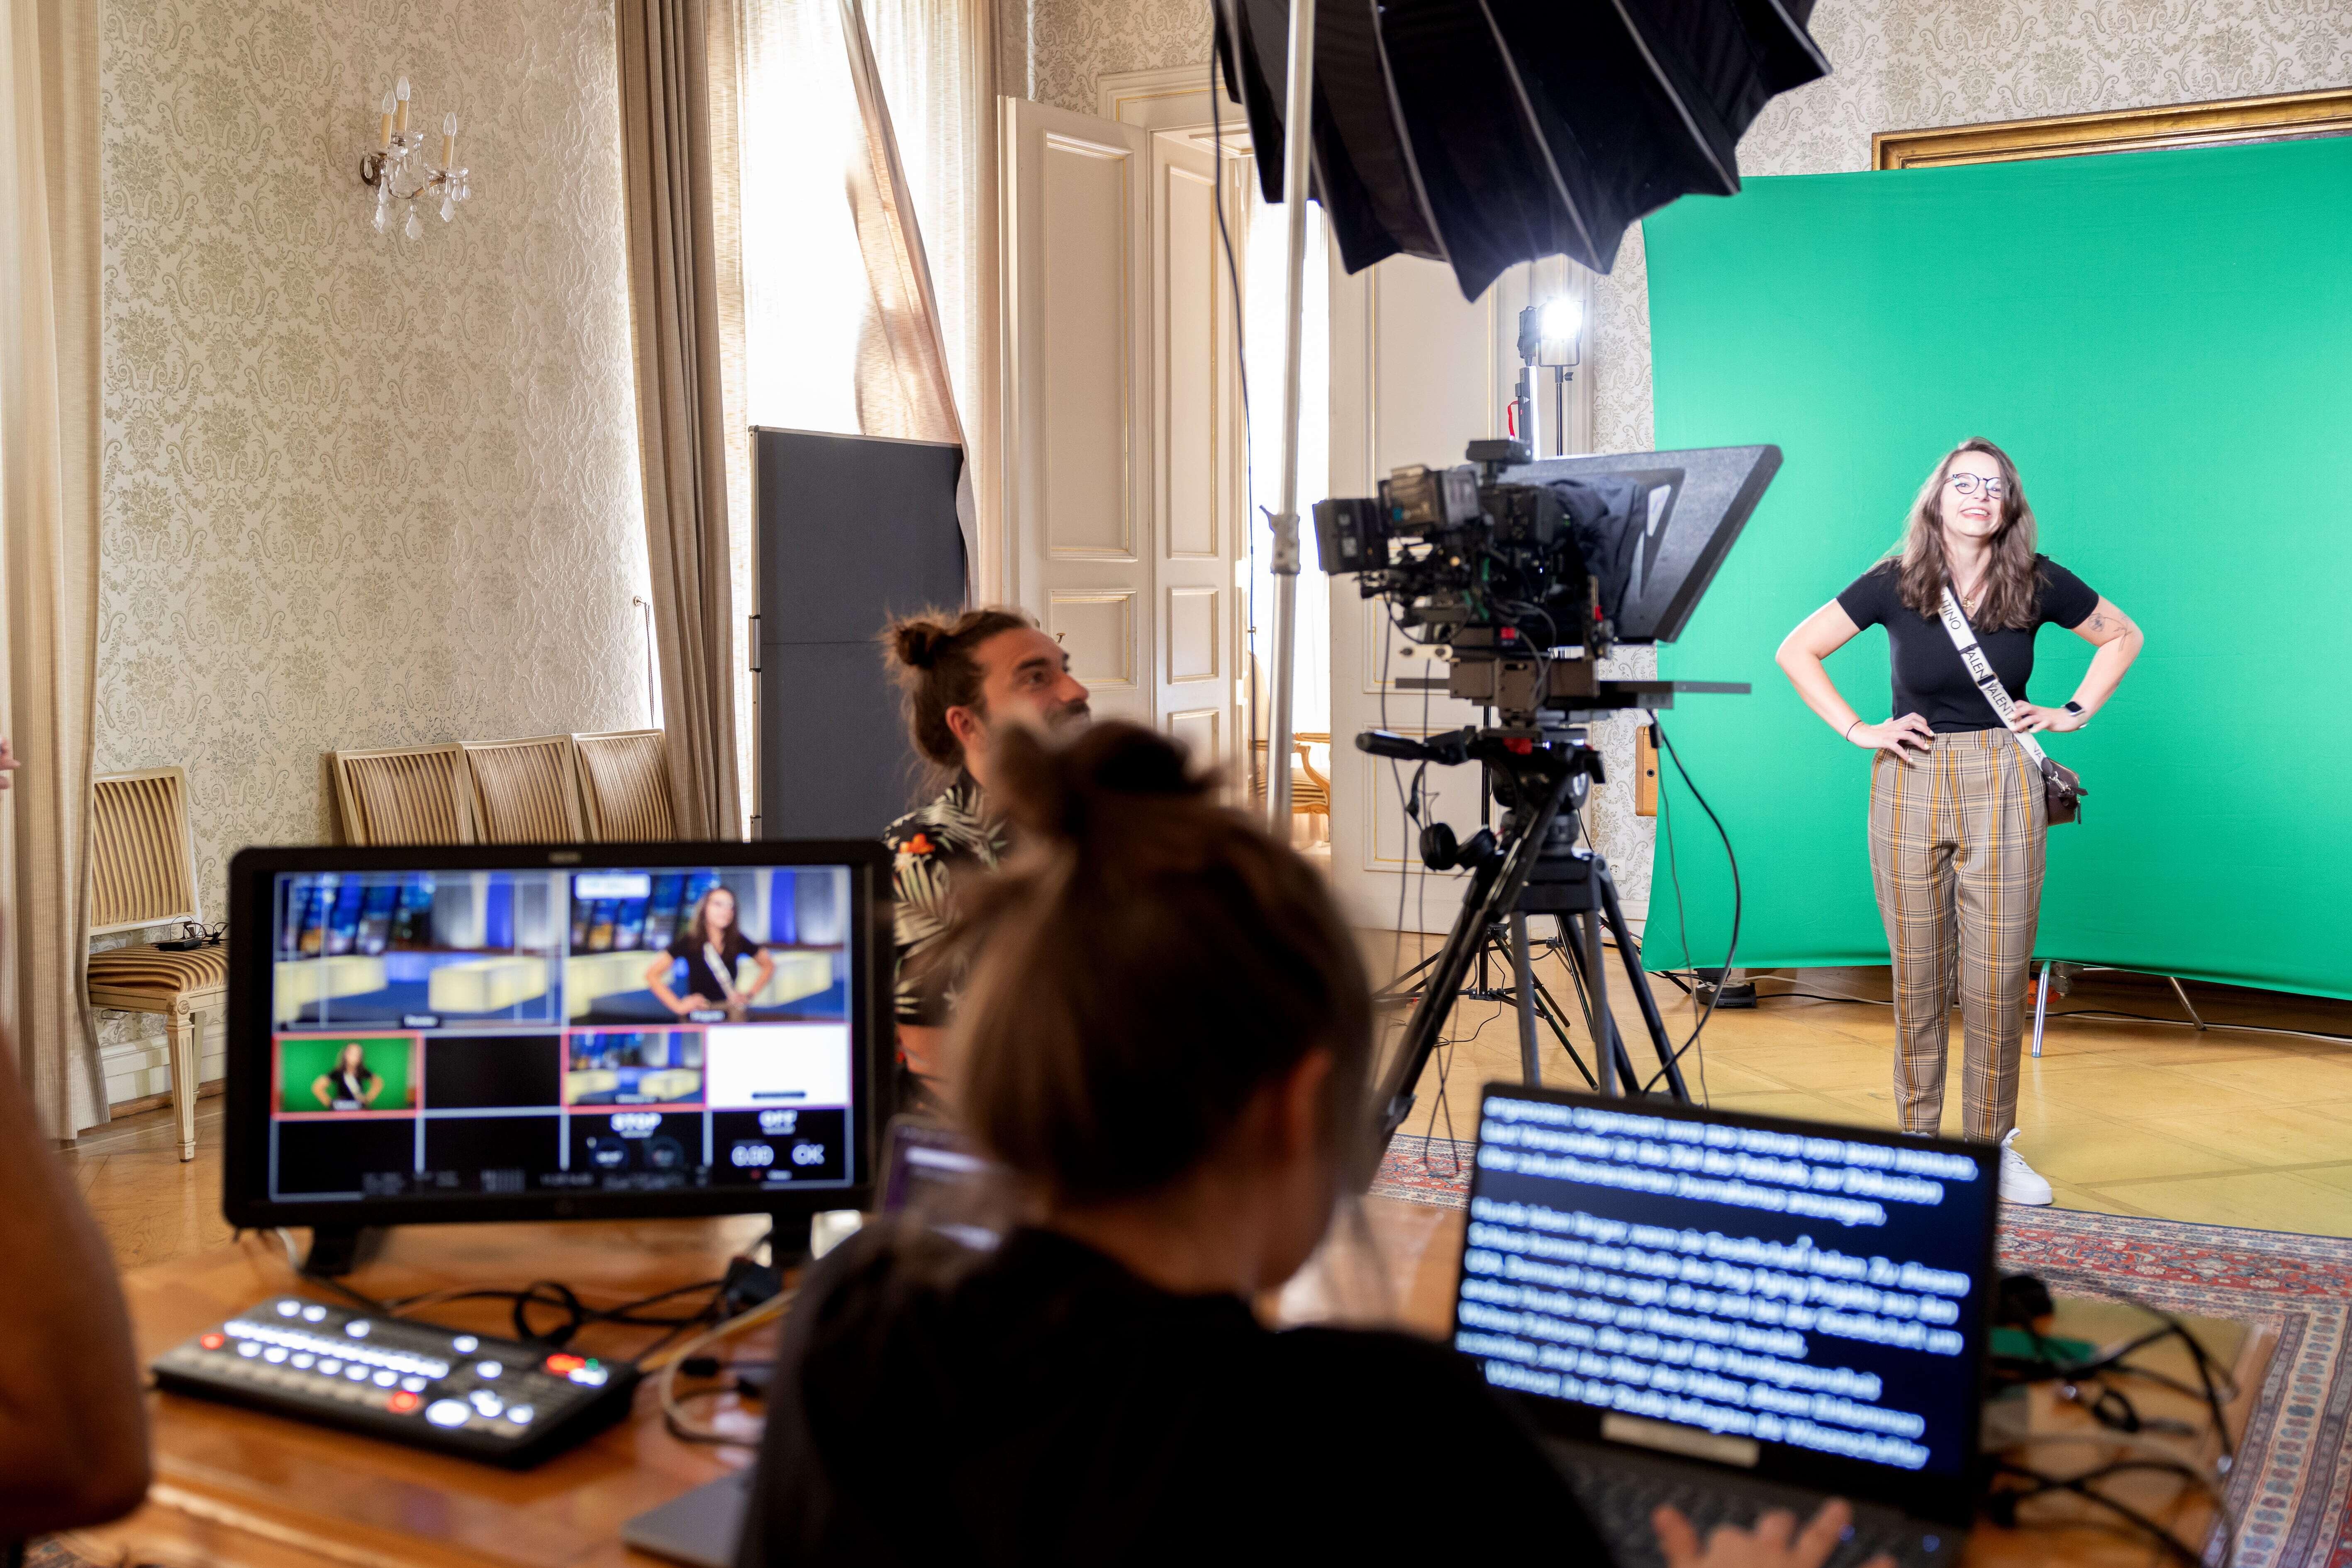 Vor einem Greenscreen und mit diversen Kameras und Bildschirmen führen einige Personen einen TV-Studio Workshop durch.